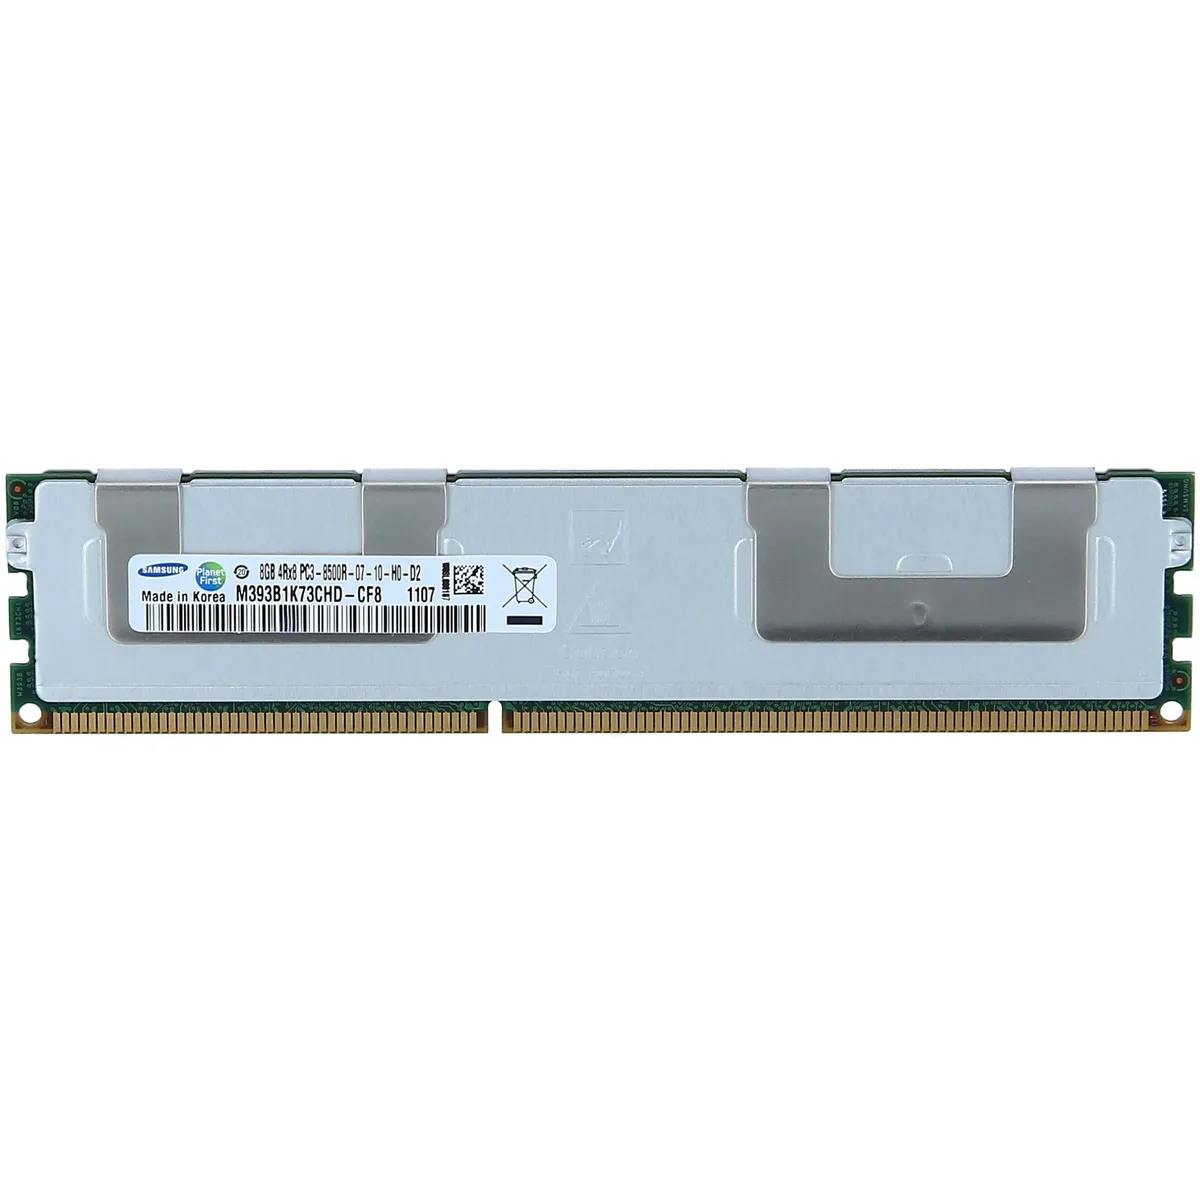 Samsung (M393B1K73CHD-CF8) - 8GB PC3-8500R (4Rx8, DDR3-1066MHz) RAM